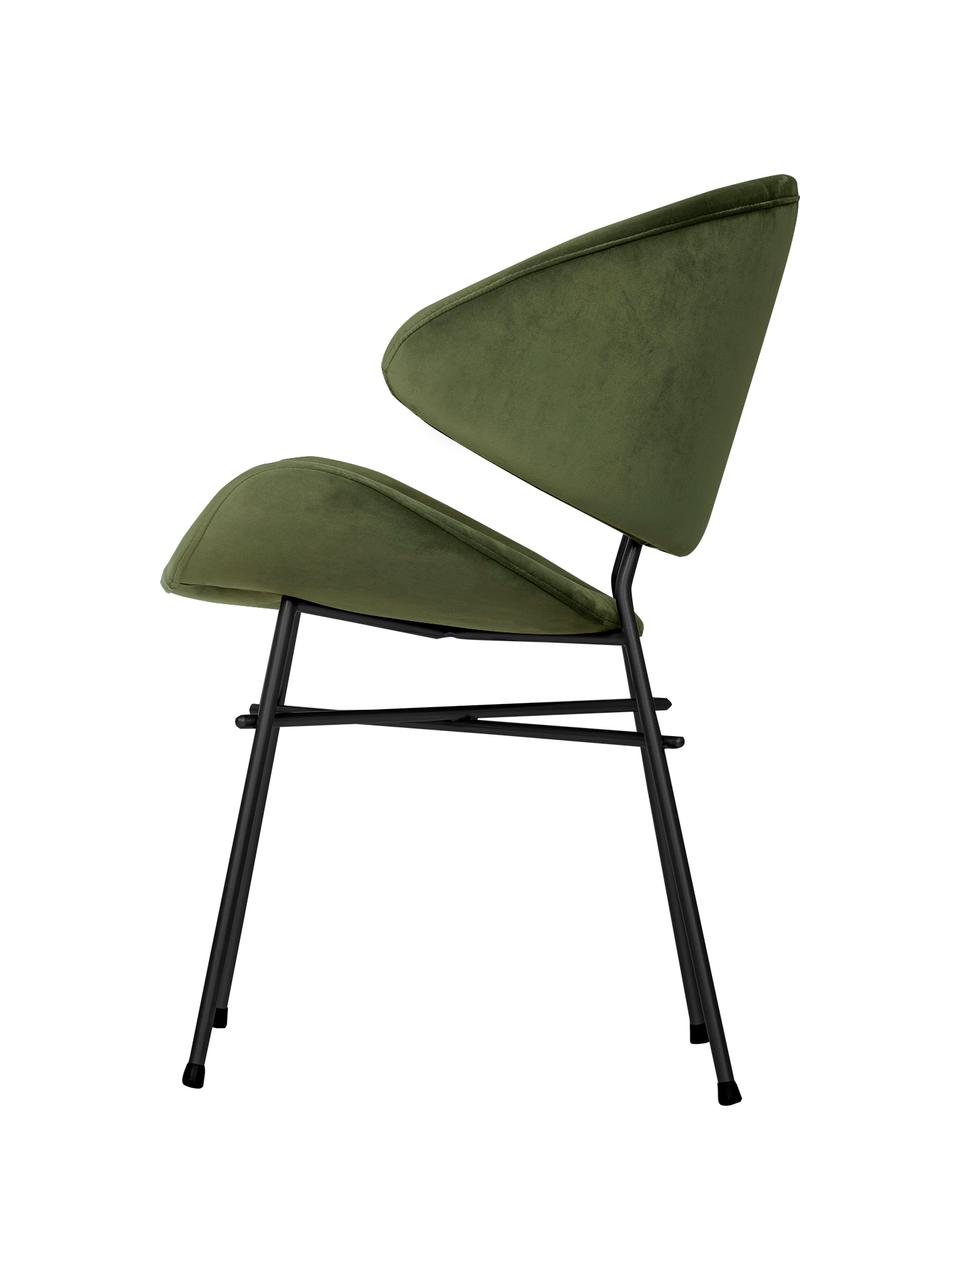 Krzesło tapicerowane z weluru Cheri, Tapicerka: 100% poliester (welur), w, Stelaż: stal malowana proszkowo, Zielony, czarny, S 57 x G 55 cm